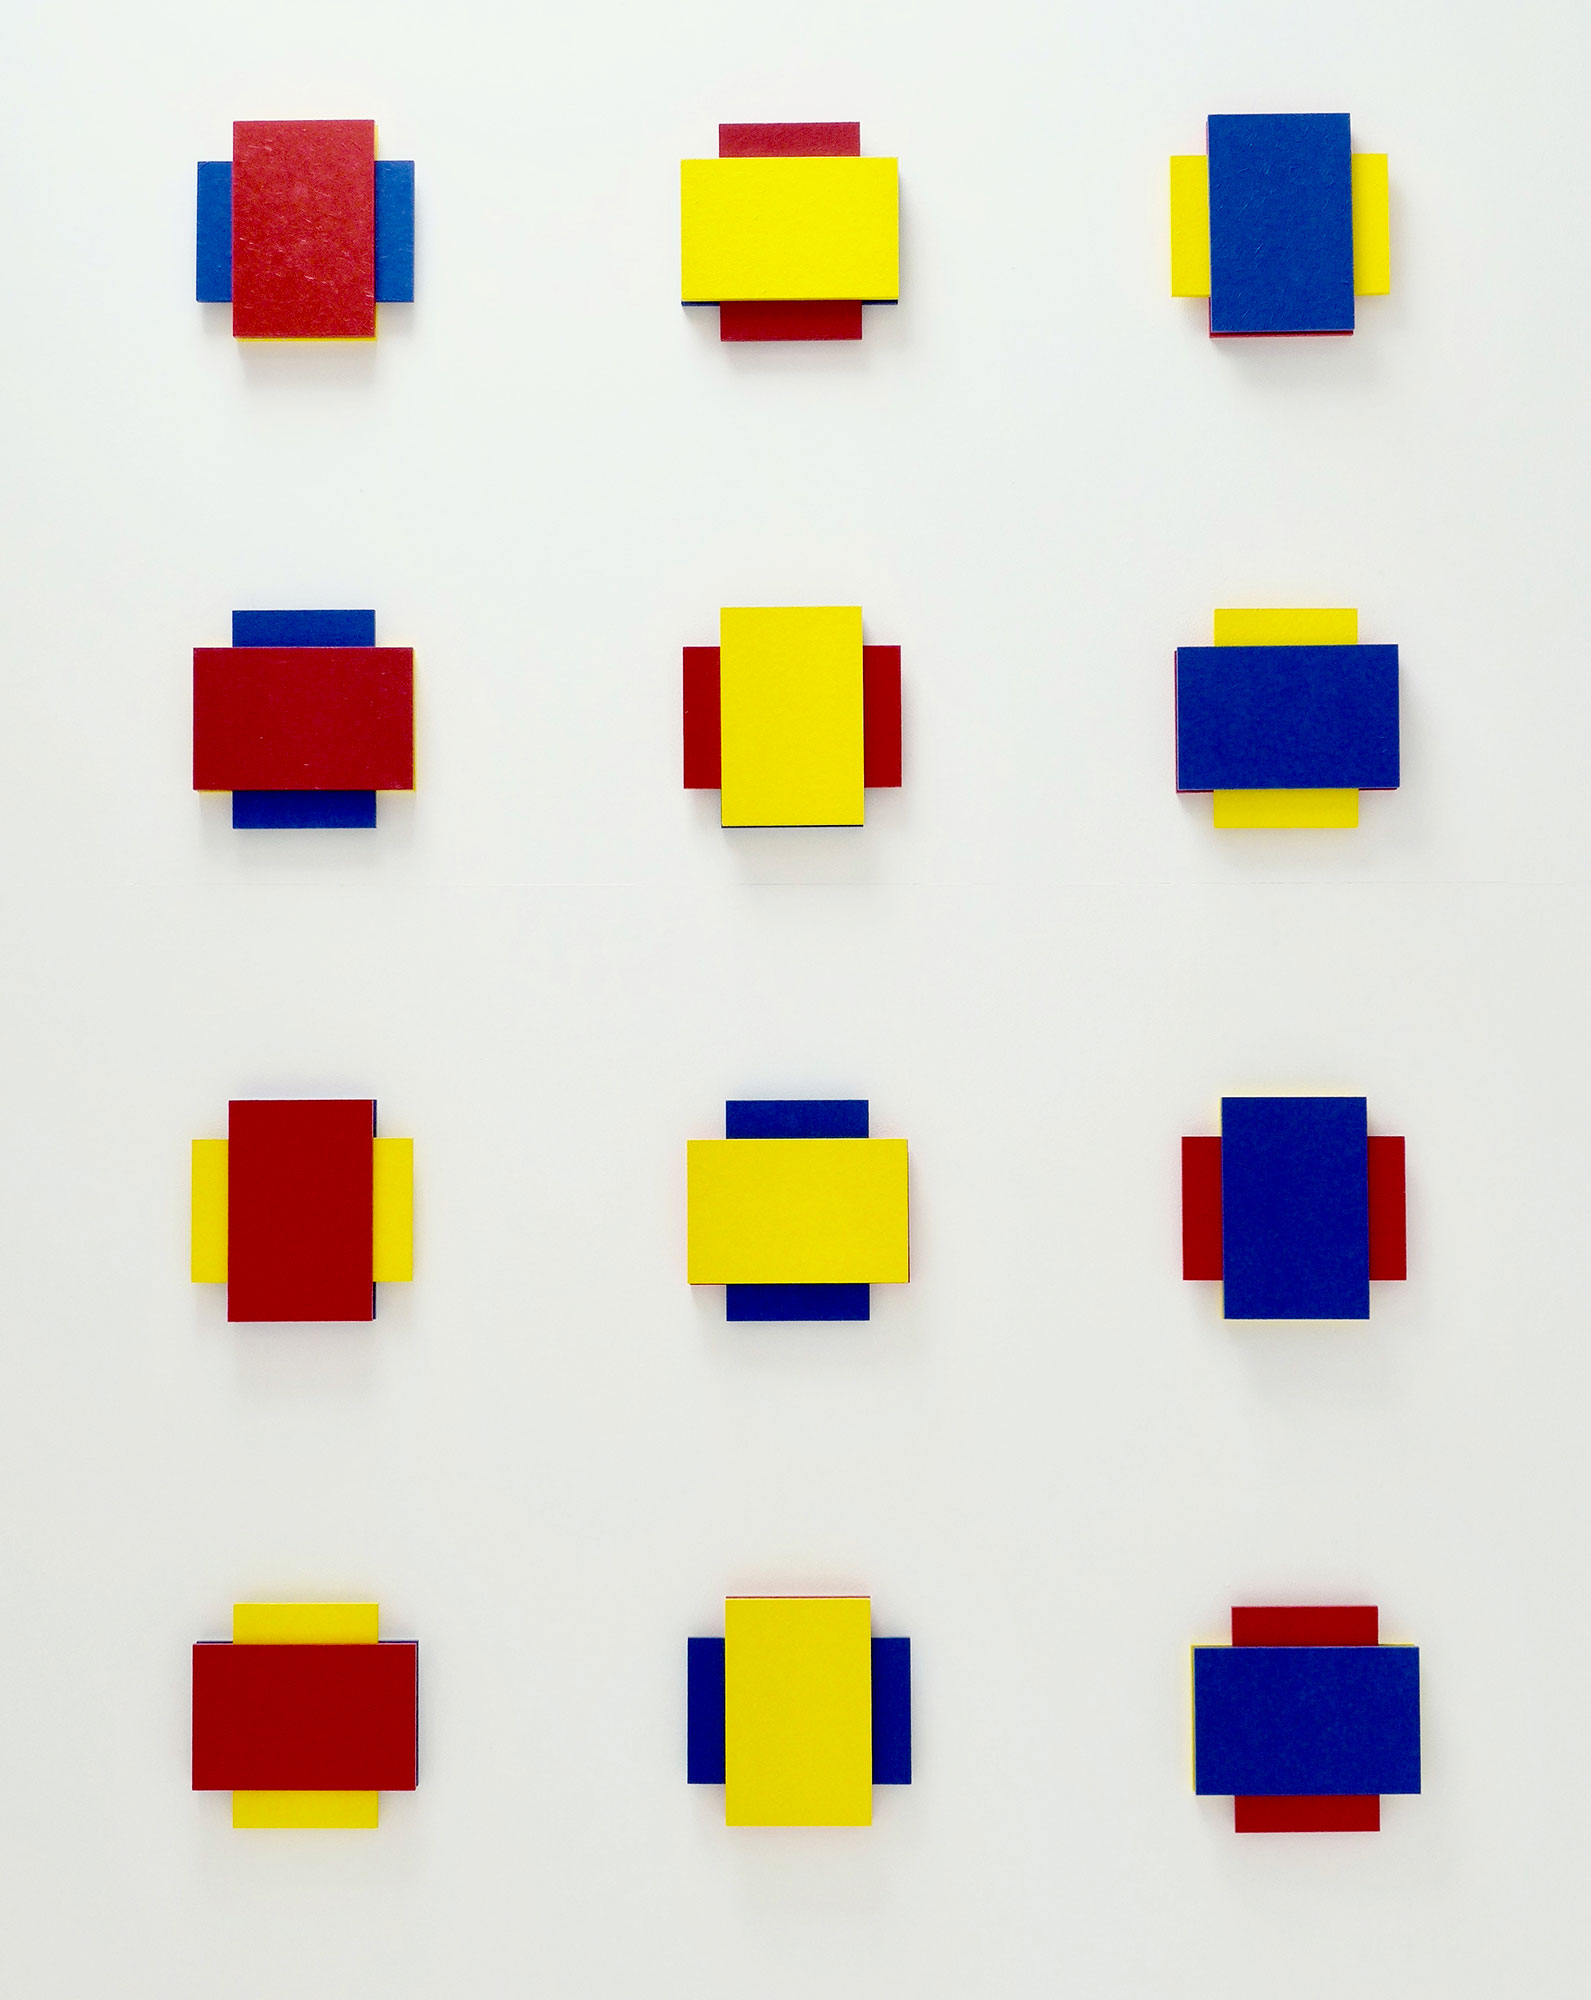 Kenneth Dingwall, RYB II, 2008, acrylic on wood, 12 parts each 20cm x 20cm x 3cm